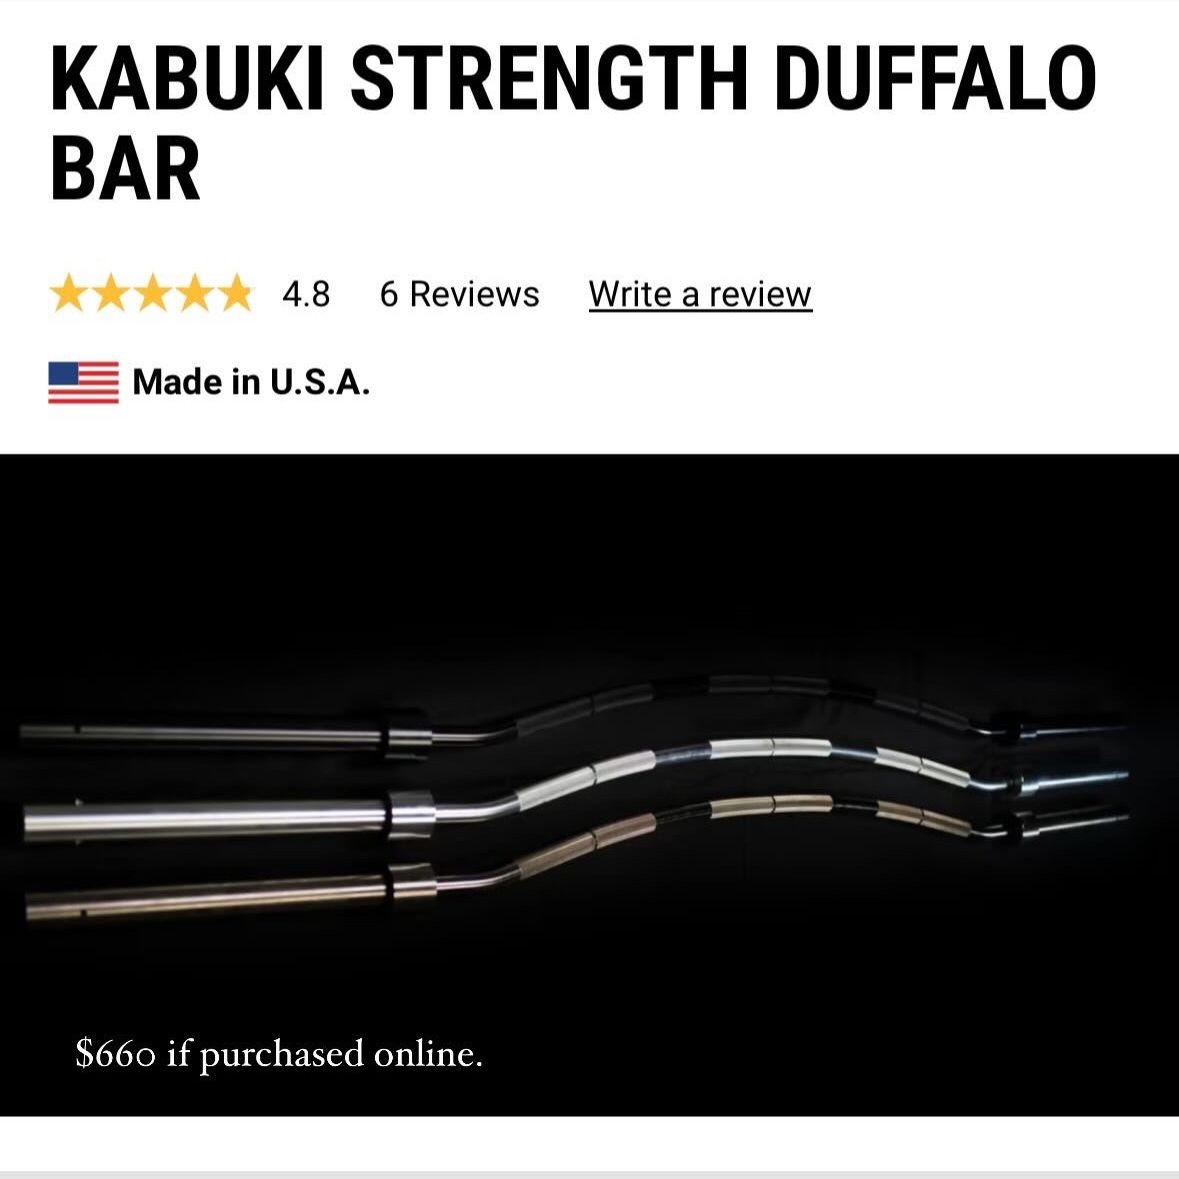 Kabuki Strength Duffalo Bar